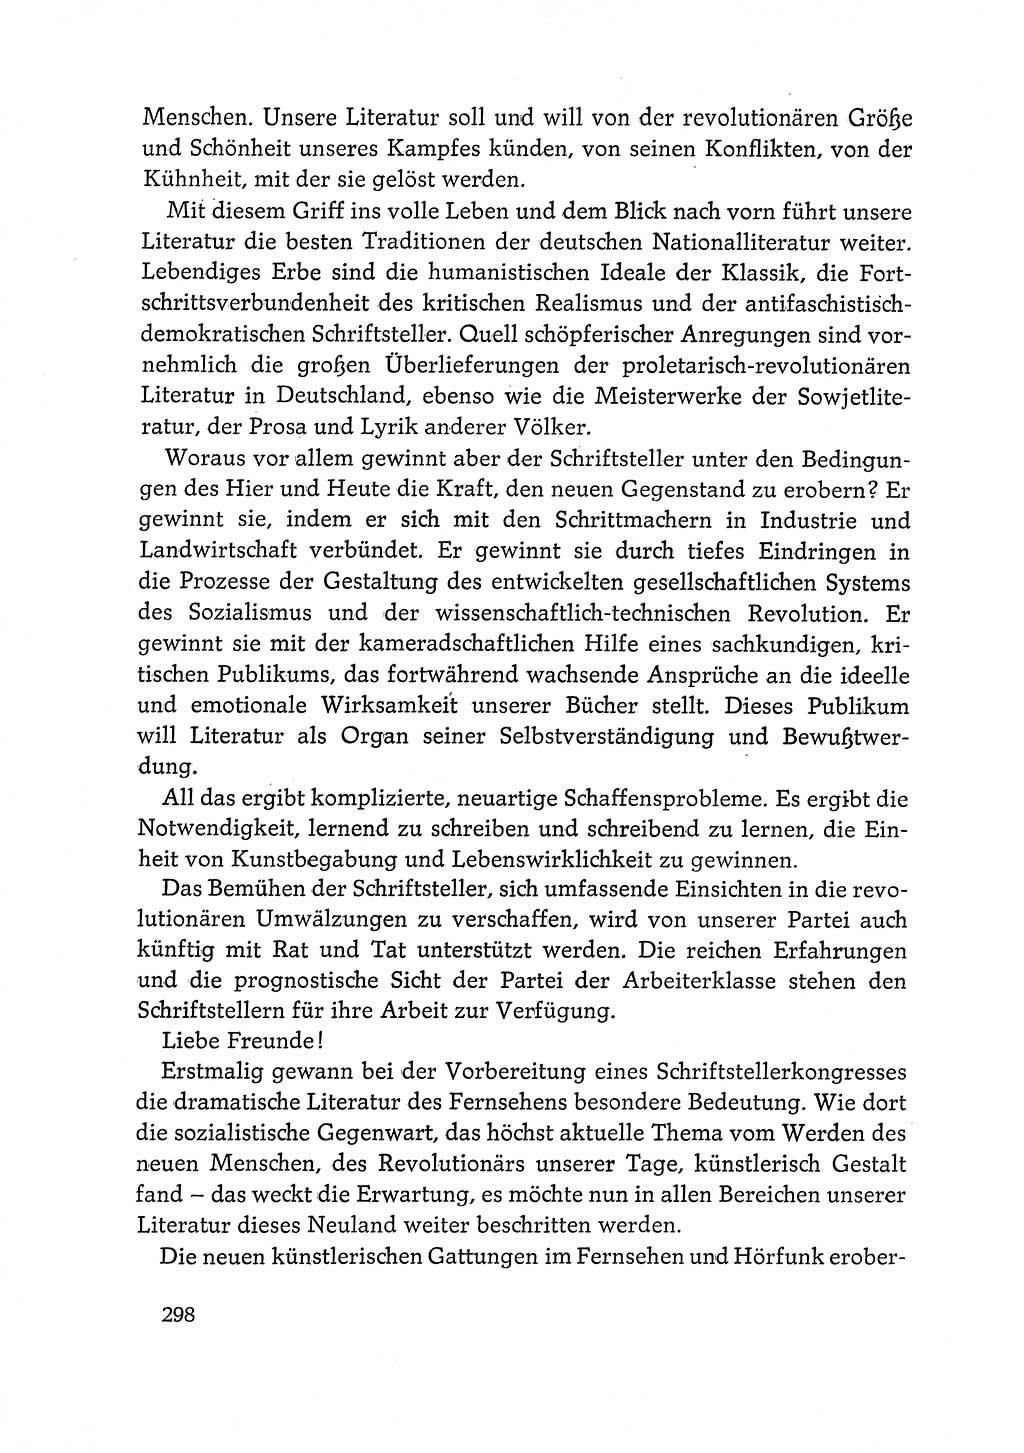 Dokumente der Sozialistischen Einheitspartei Deutschlands (SED) [Deutsche Demokratische Republik (DDR)] 1968-1969, Seite 298 (Dok. SED DDR 1968-1969, S. 298)